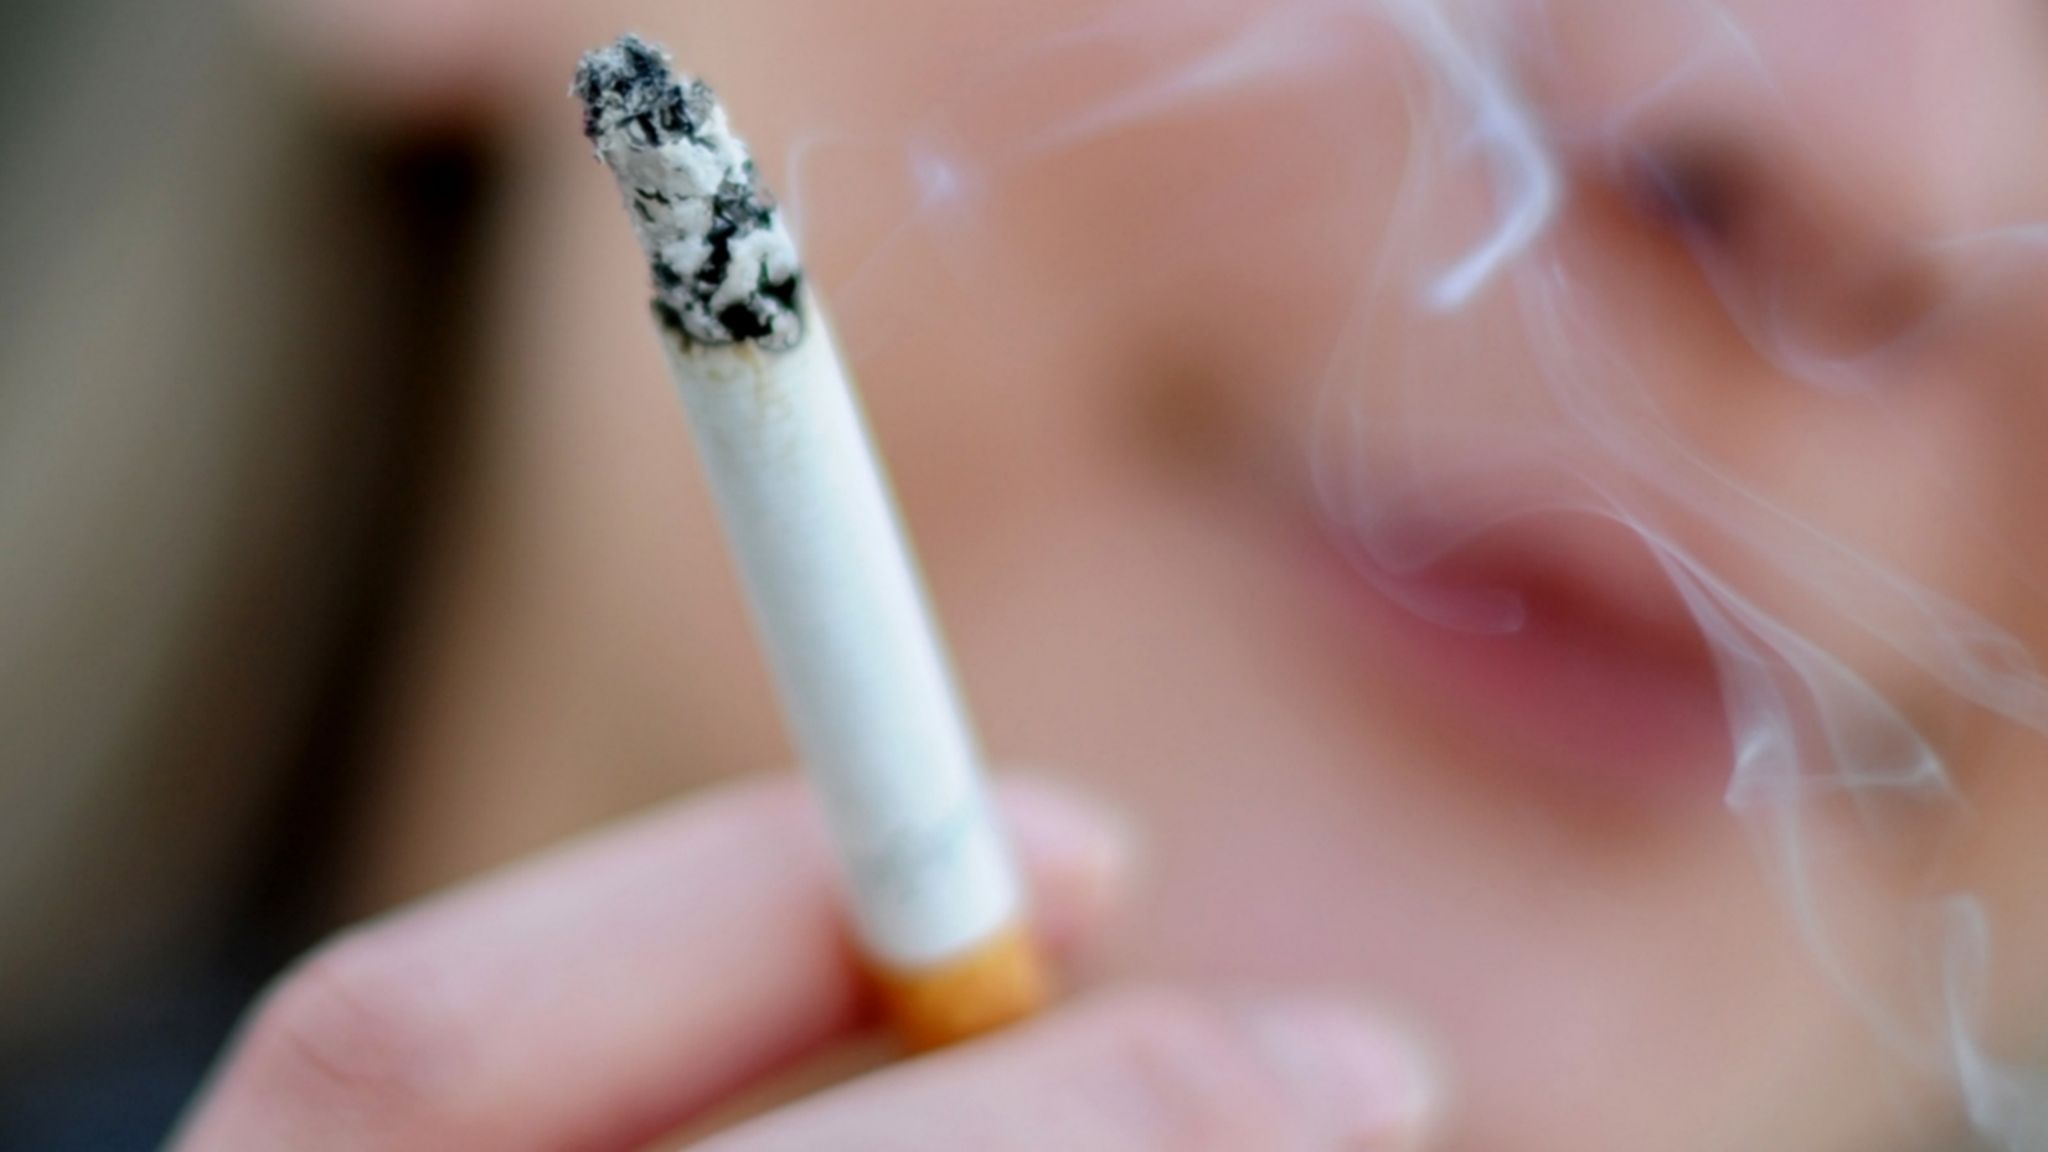 Tabakerhitzer wirklich gesünder als normale Zigarette?